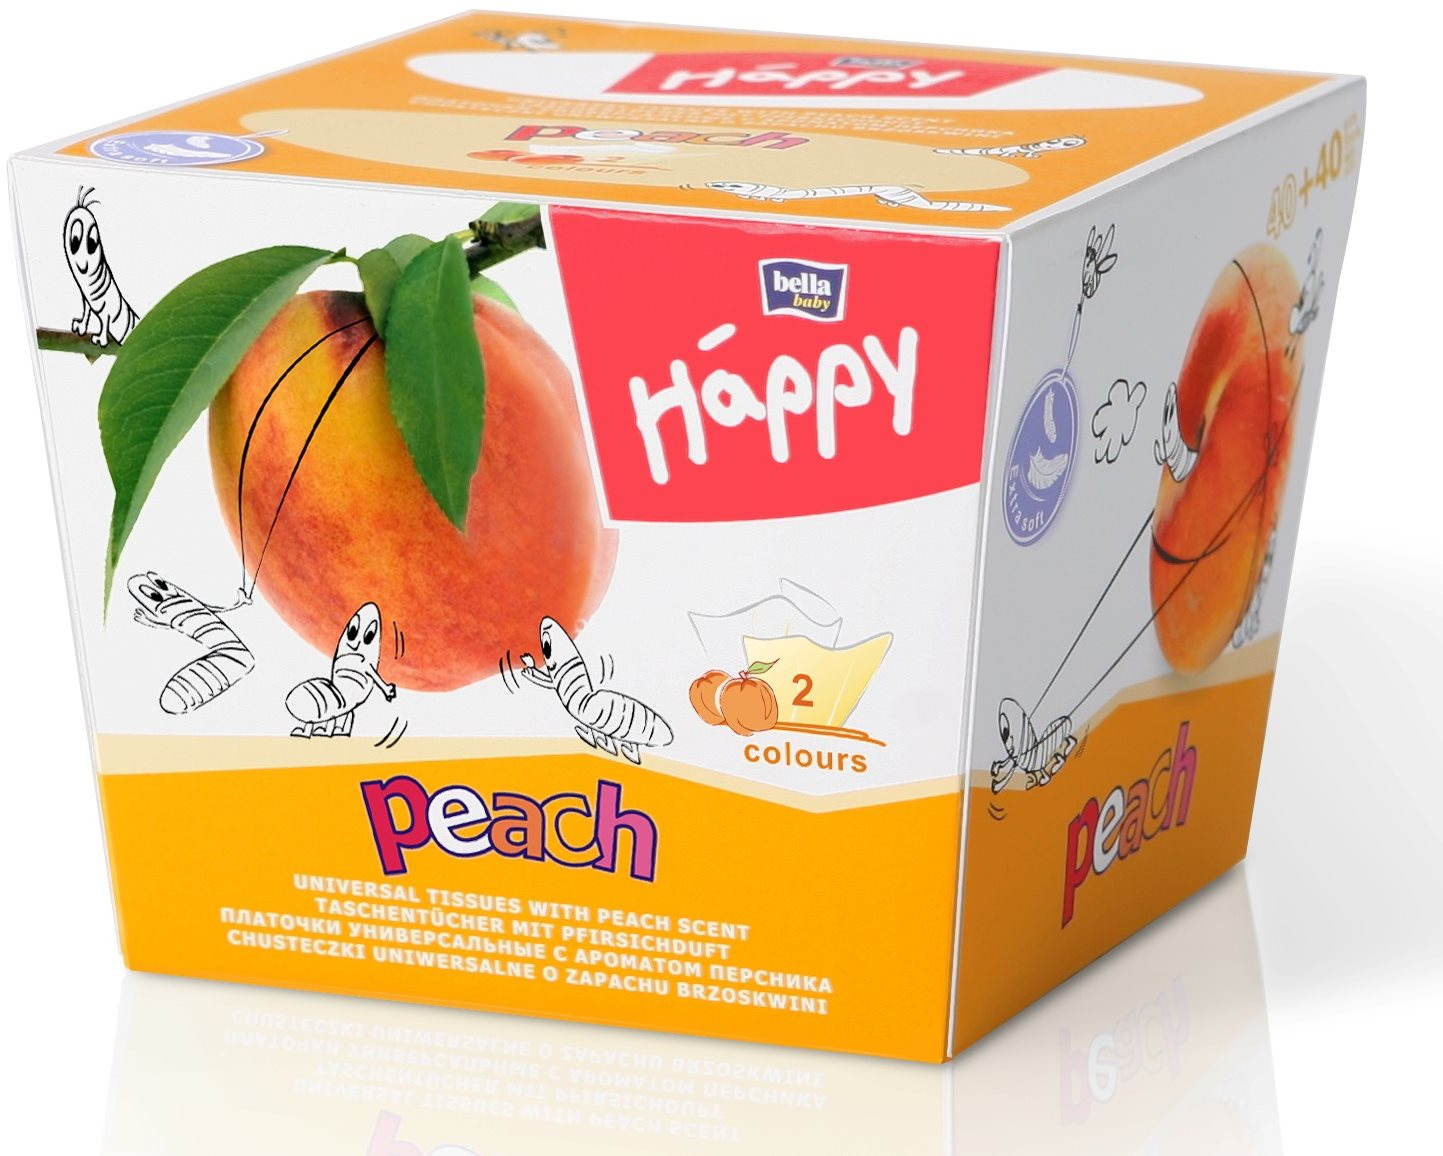 Papírzsebkendő BELLA Baby Happy Peach (80 db)